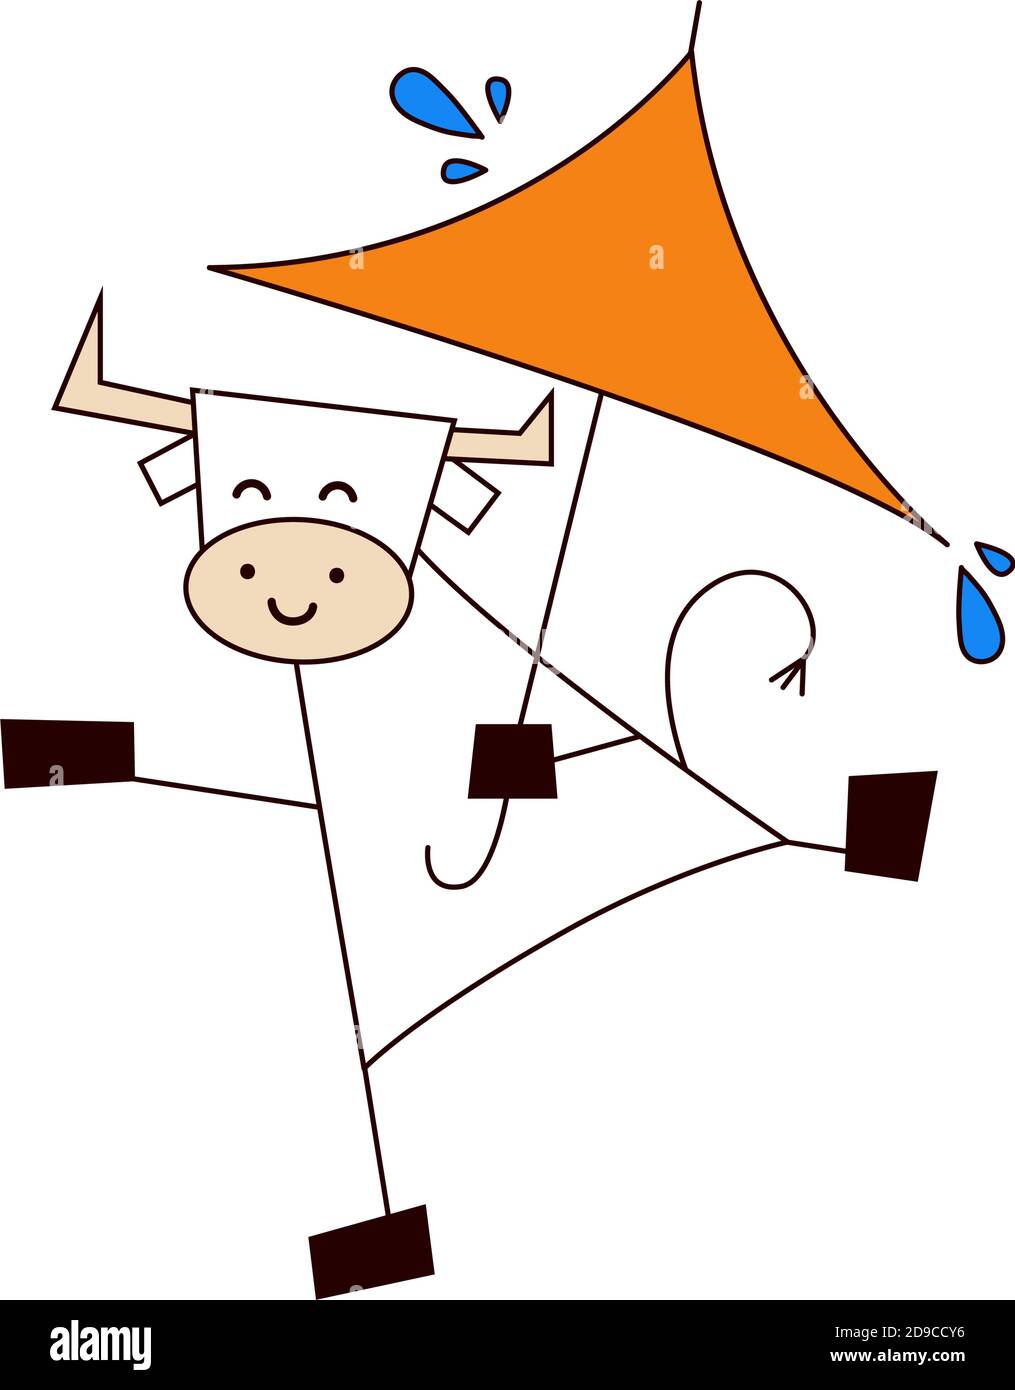 Frohes neues Jahr 2021. Das Jahr des Ochsen. Lustige niedliche kawaii Stier, Kuh im Regen mit Regenschirm. Wetter und Jahreszeiten. Vektorgrafik in Cartoon Stock Vektor